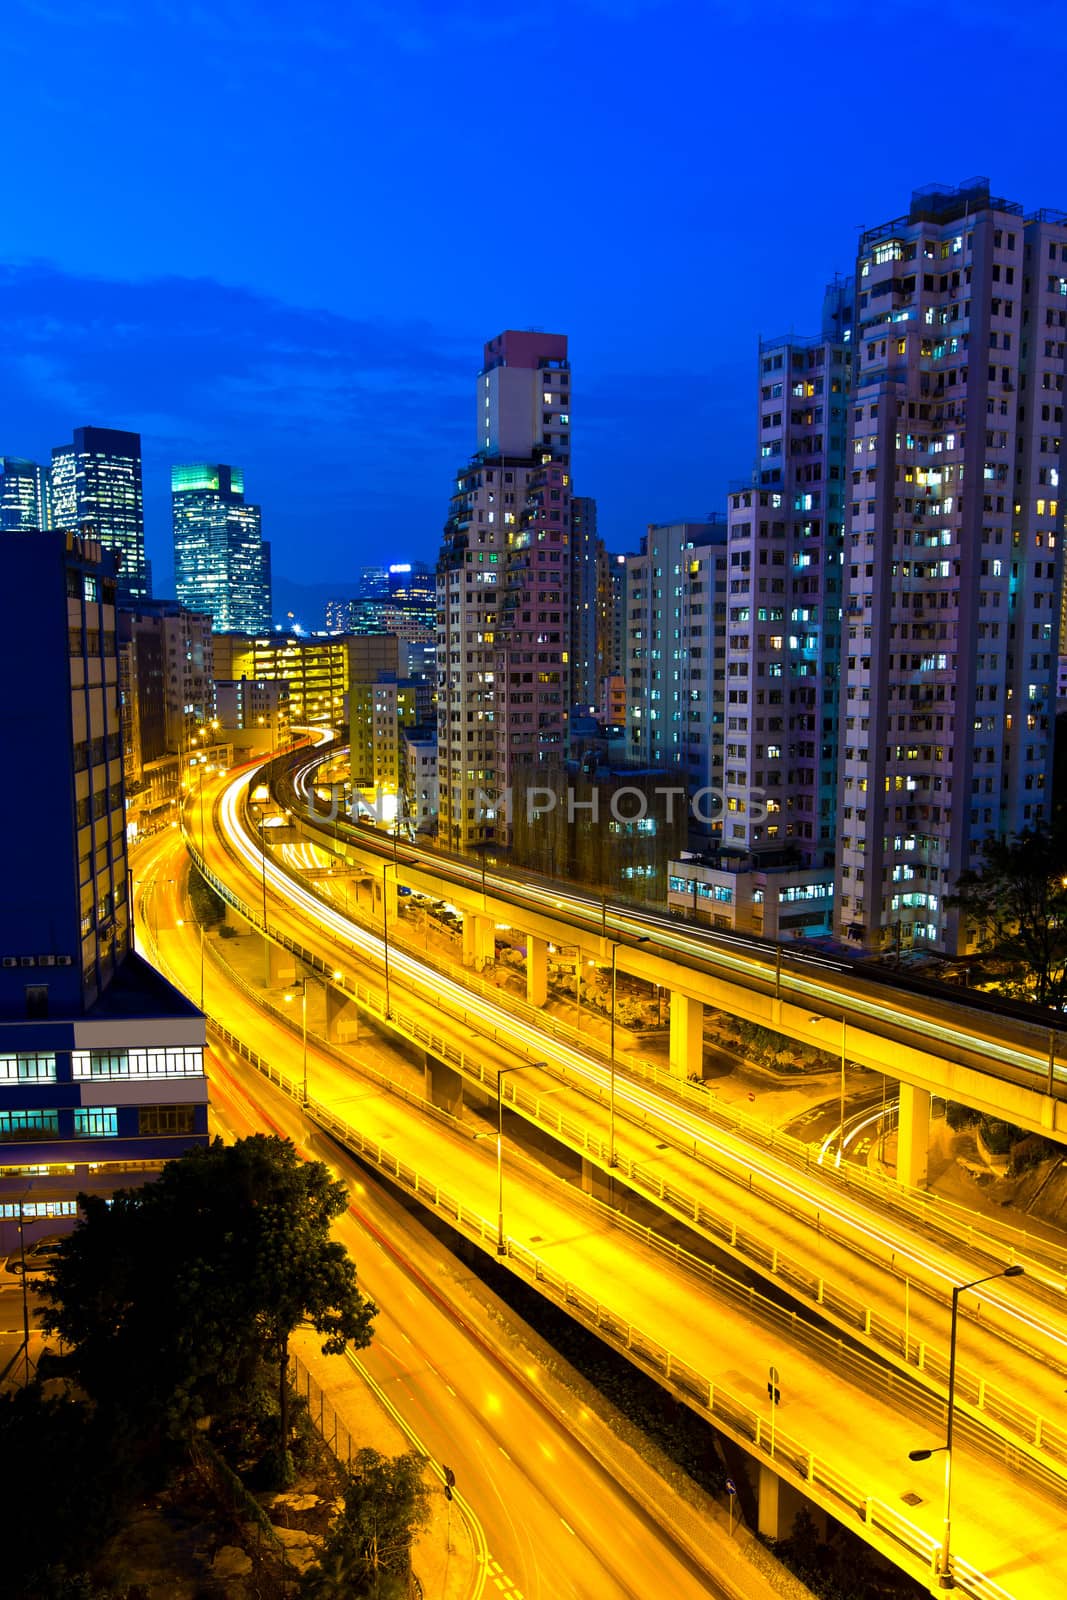 Elevated expressway in Hong Kong at night